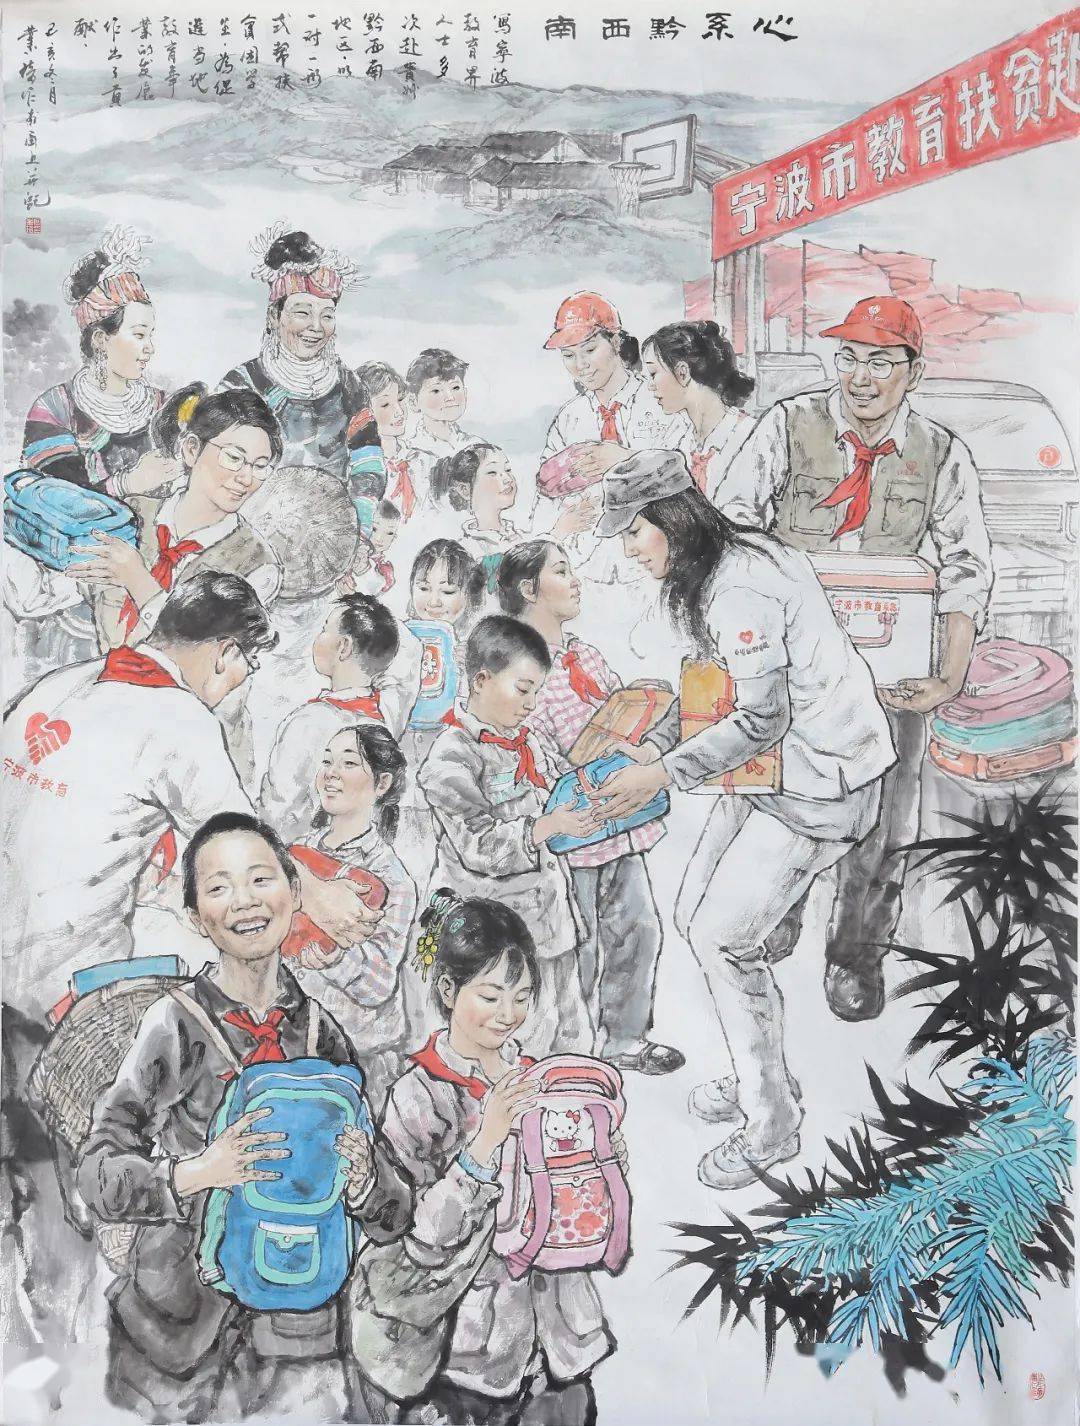 展讯| 庆祝新中国成立七十周年宁波市重大主题美术创作作品展